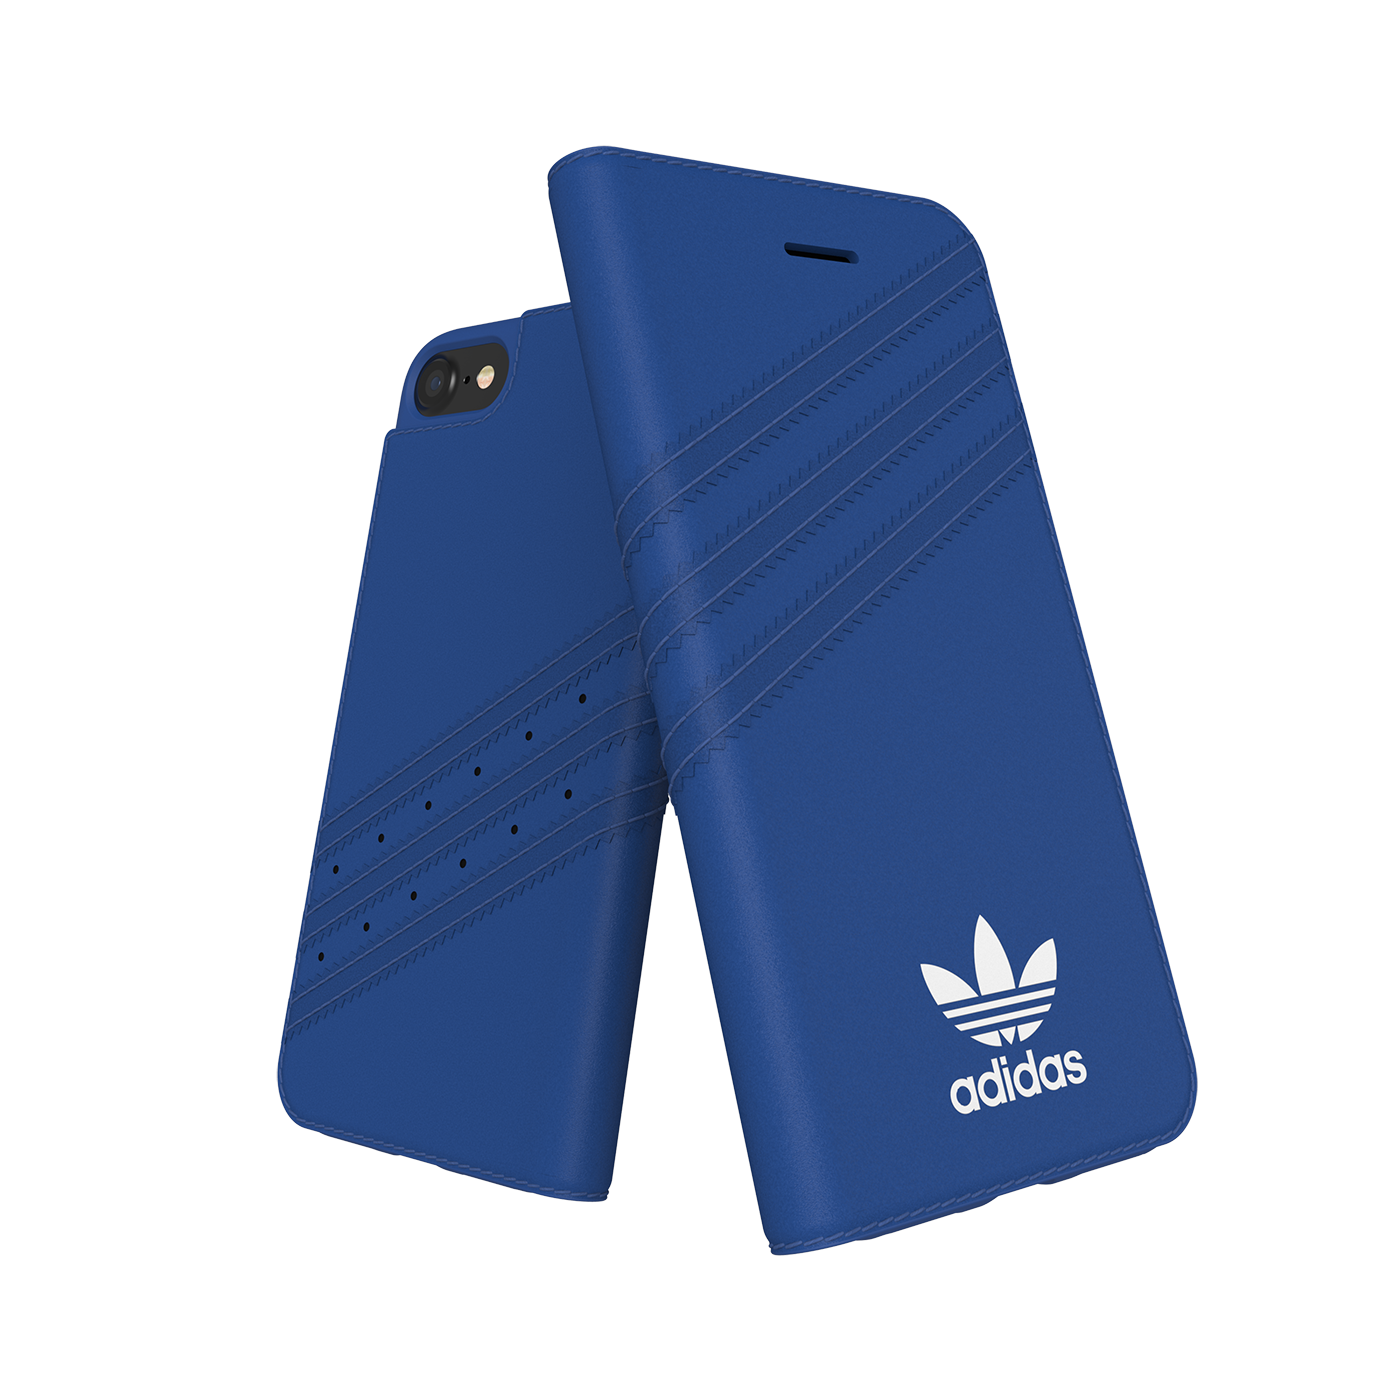 adidas Originals 3-Stripes Booklet Case Blue iPhone 2 28354